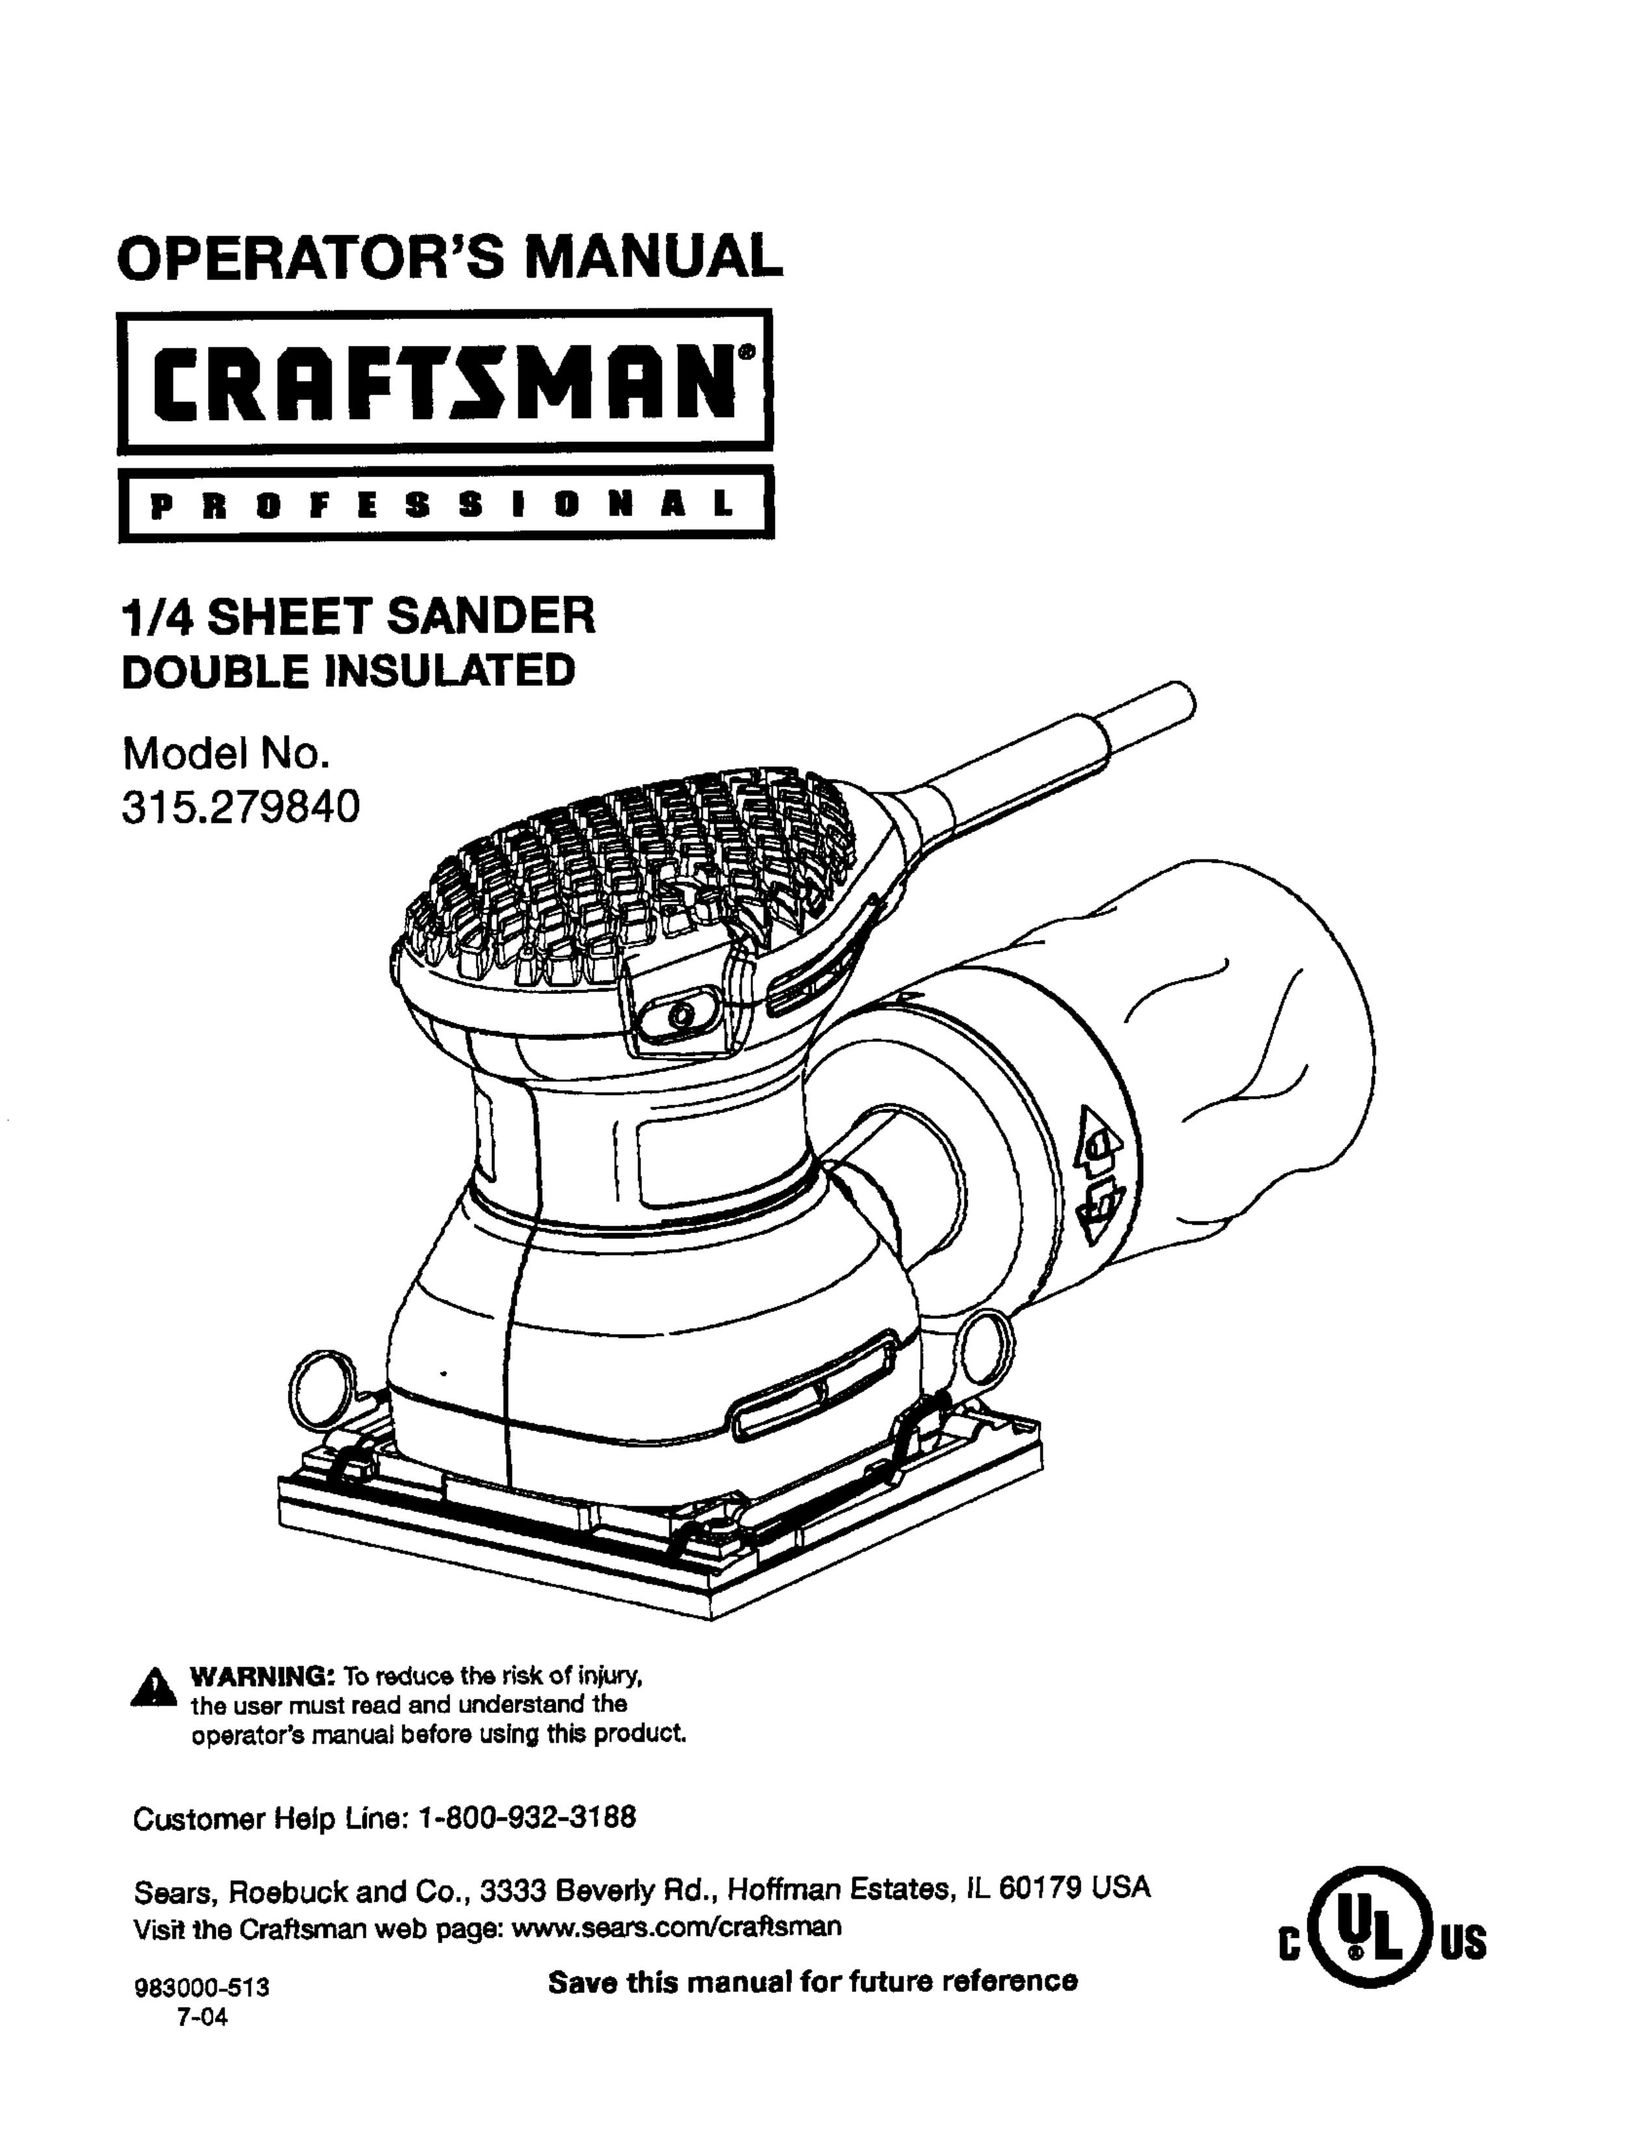 Craftsman 315.27984 Sander User Manual